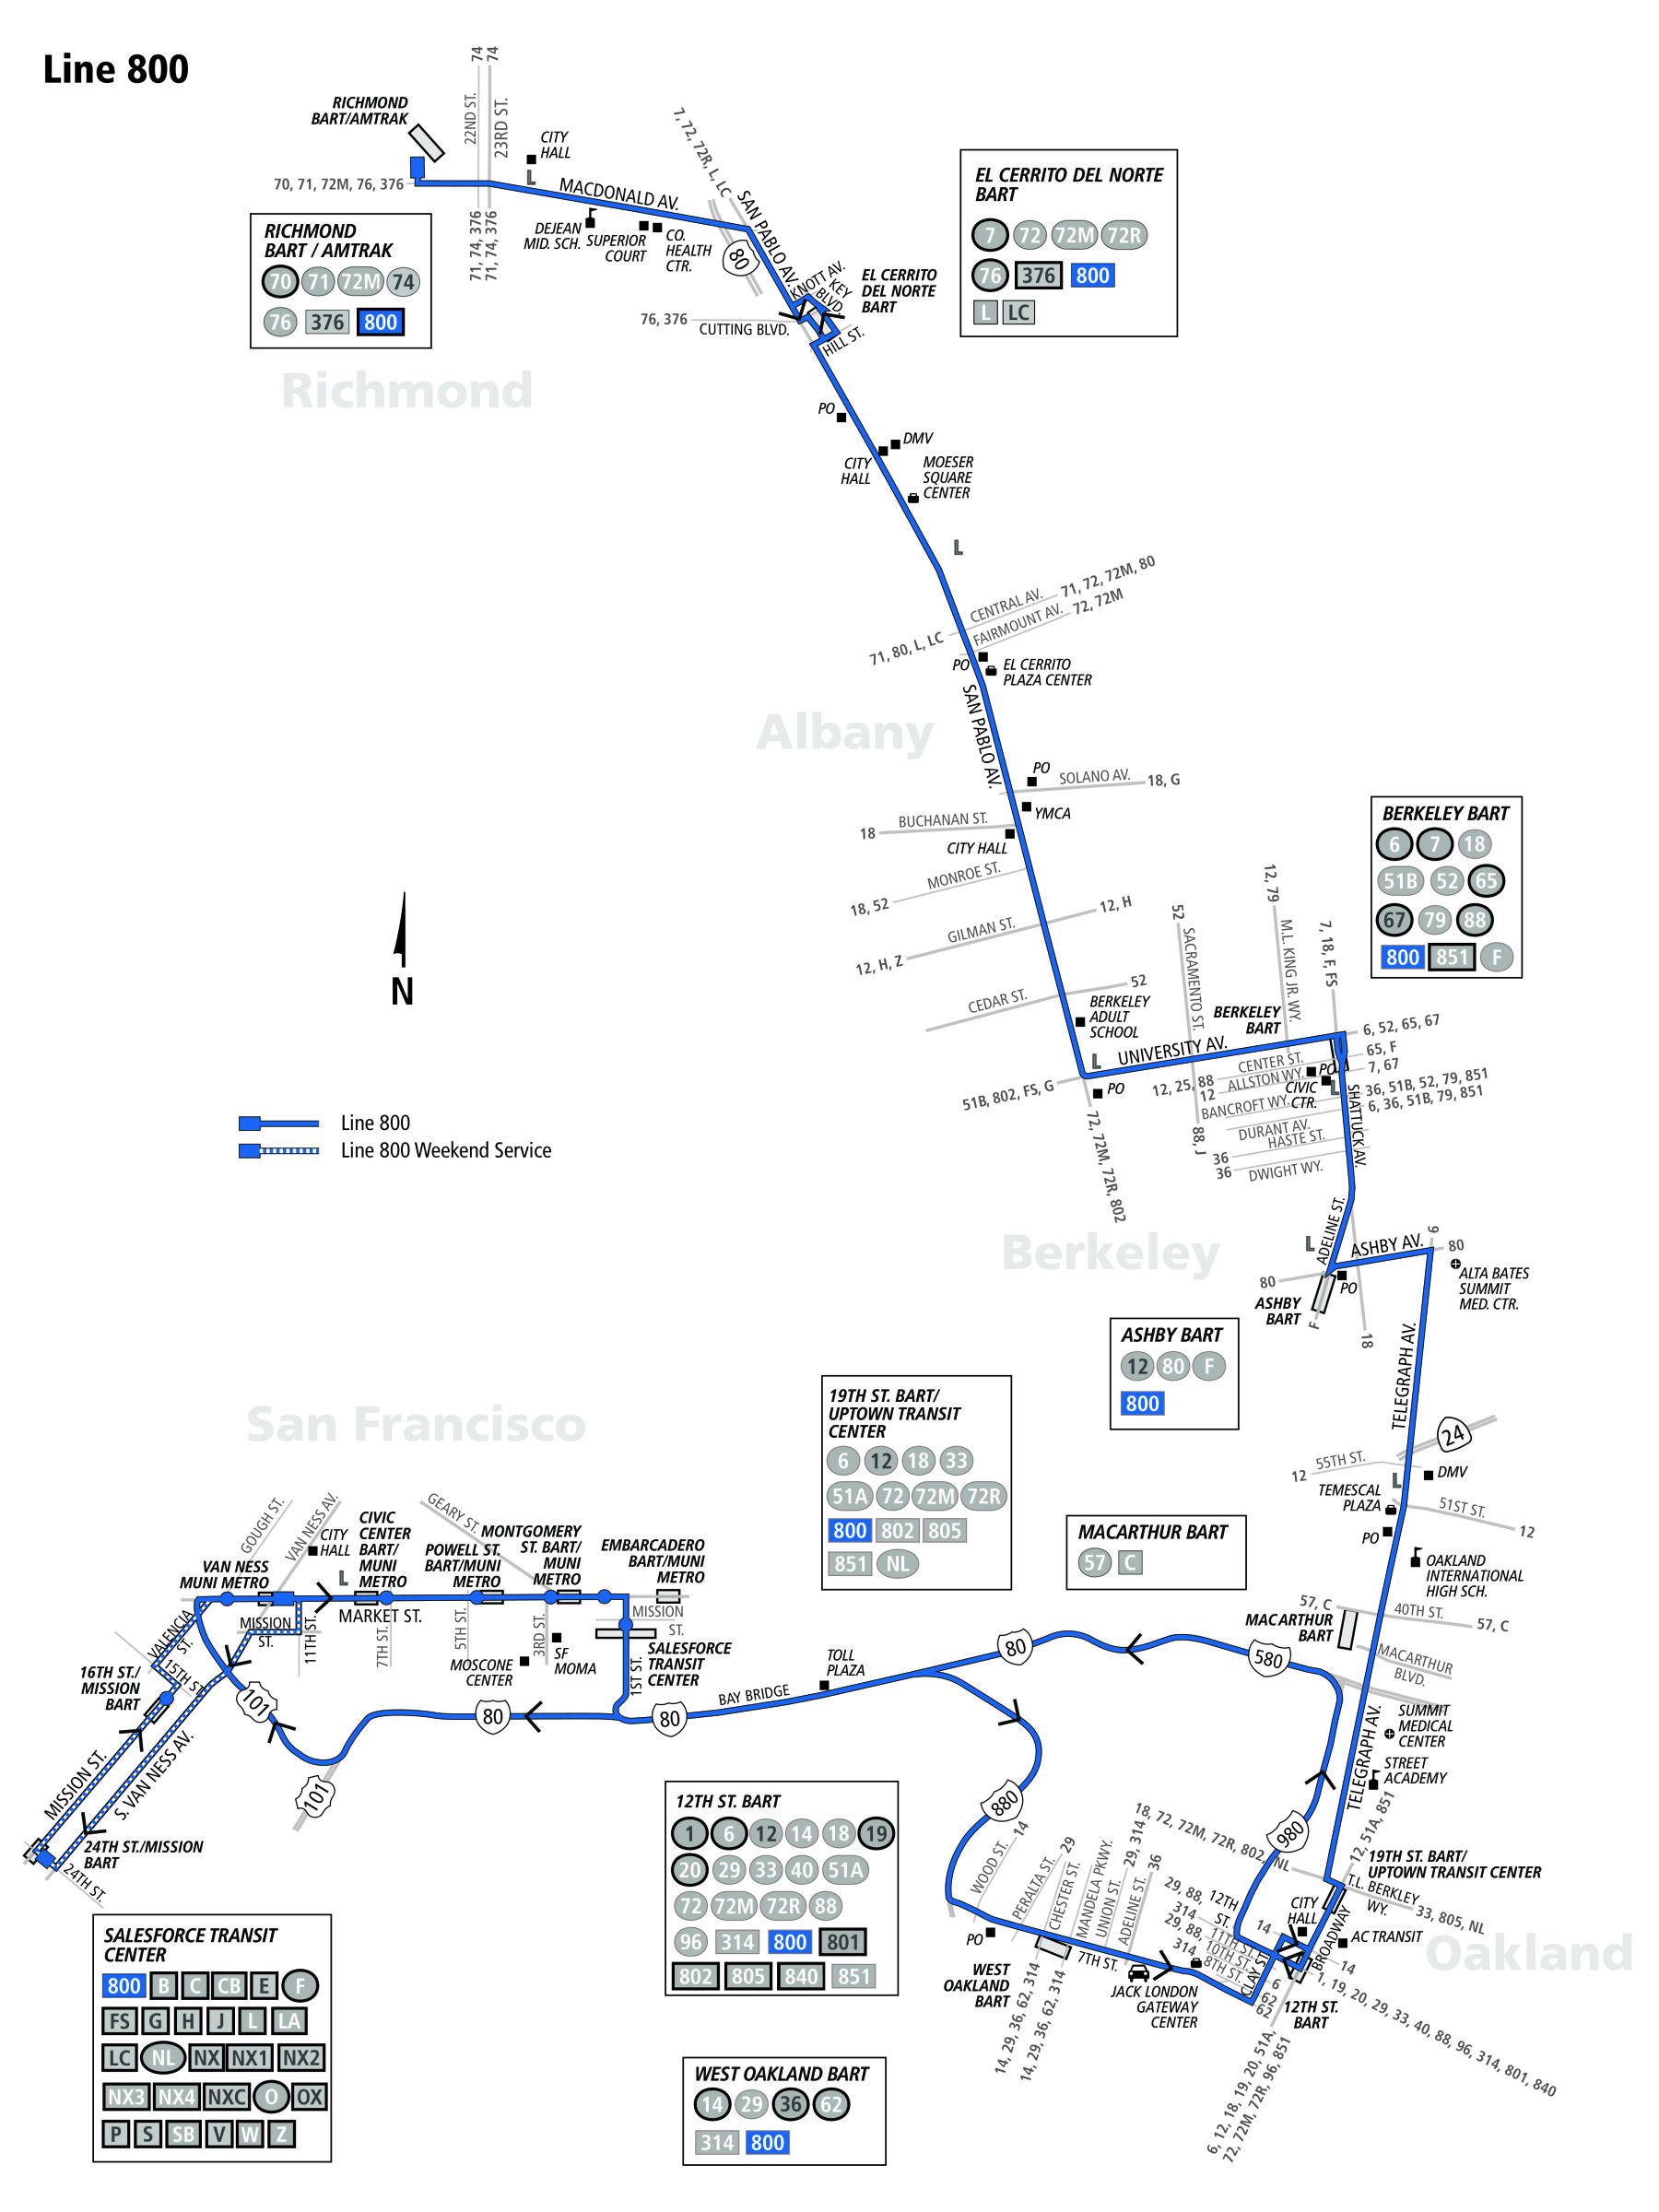 800 bus schedule - ac transit - sf bay transit